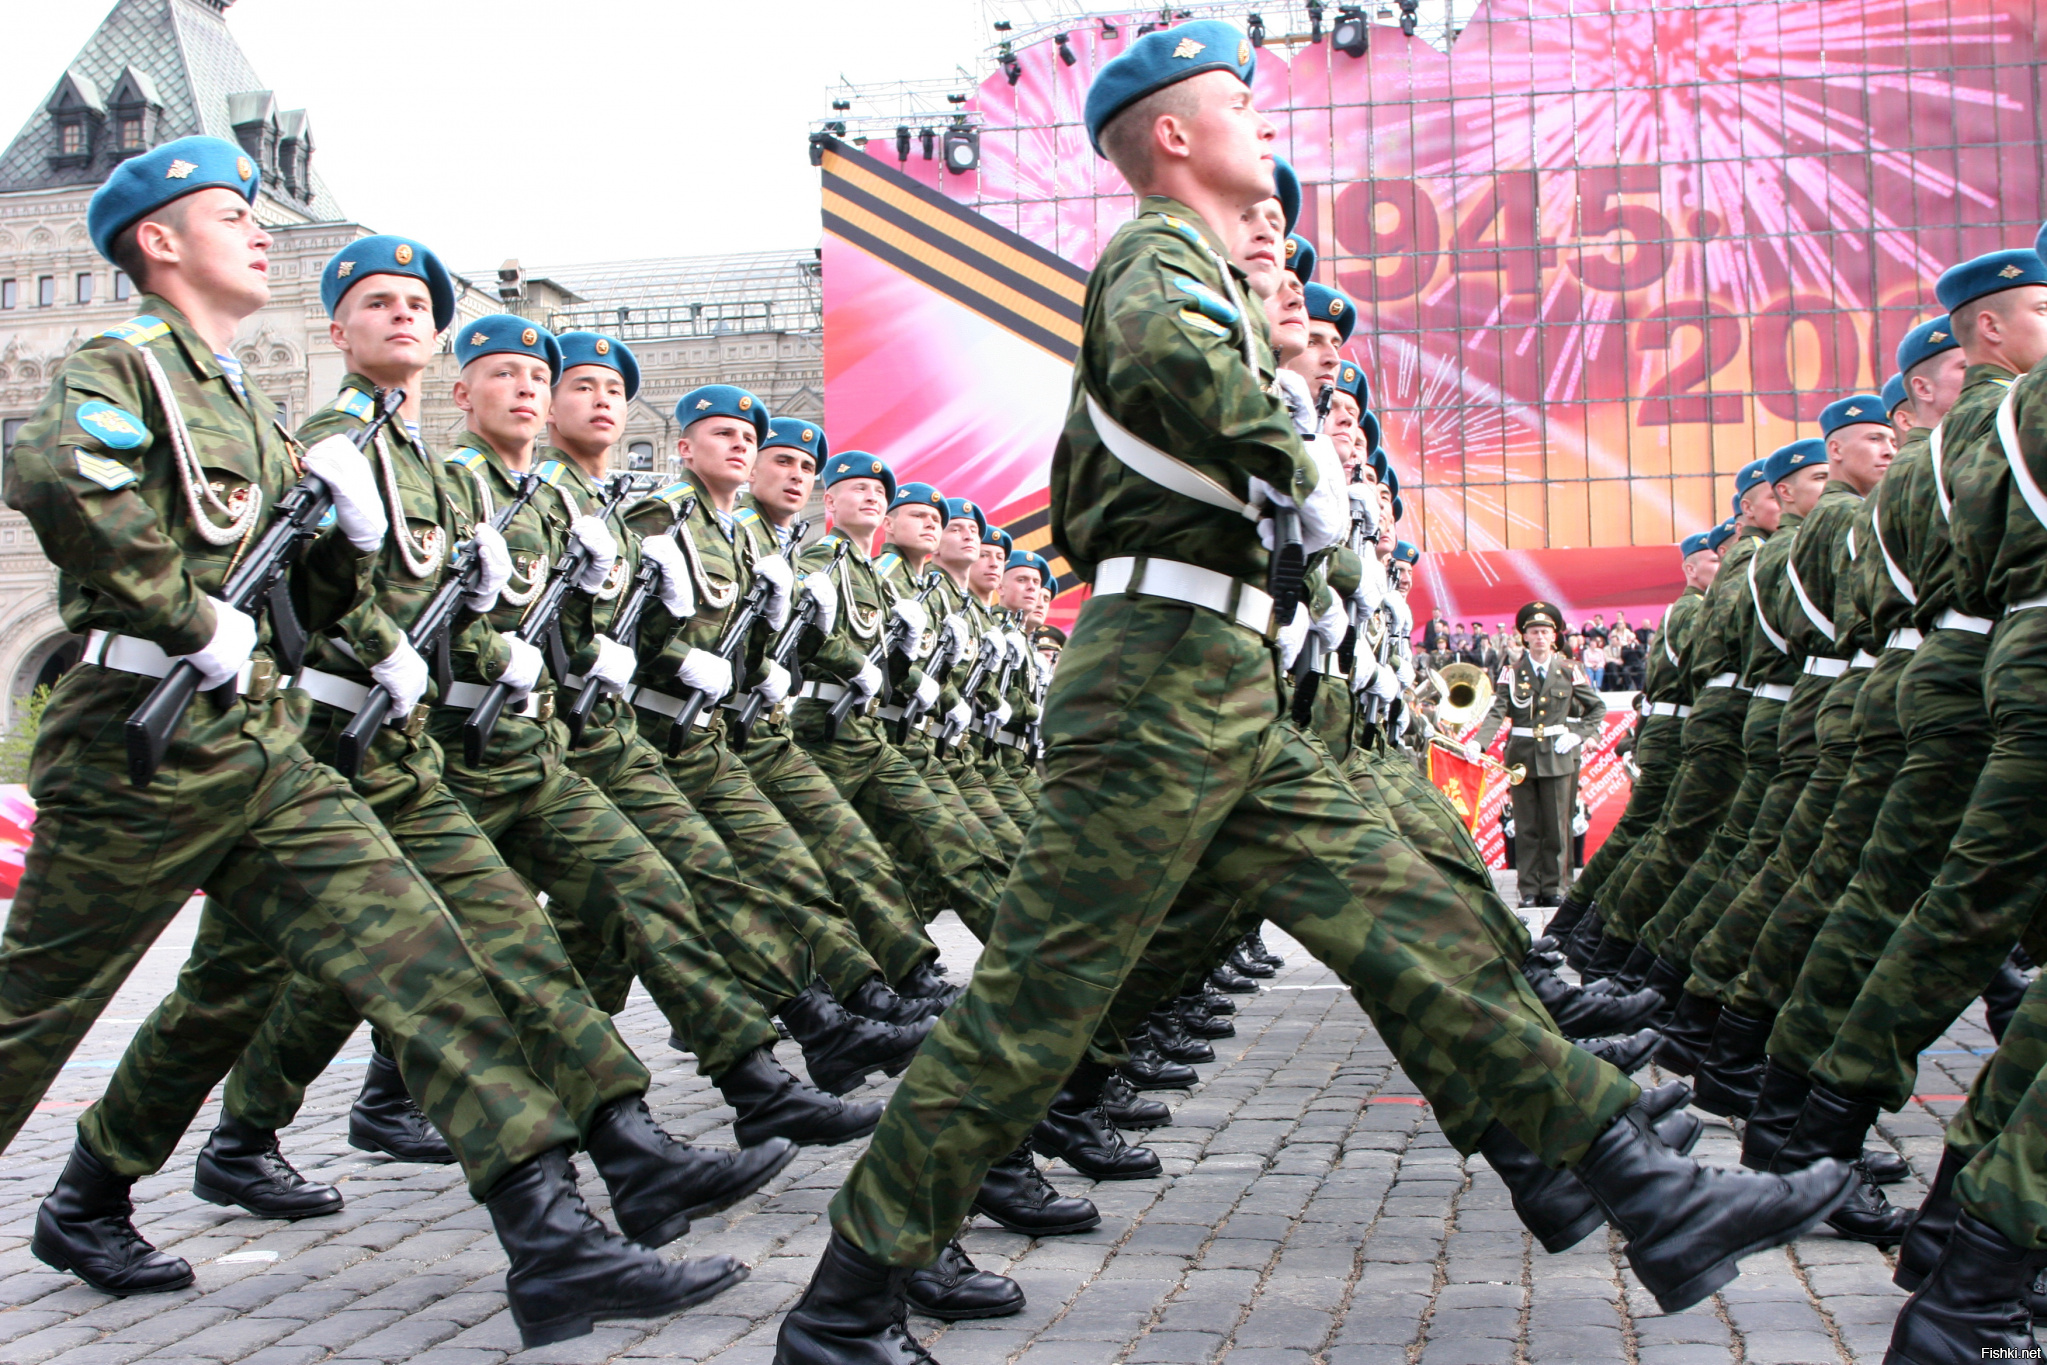 9 мая родин. Российский солдат на параде. Солдаты на параде. День защитника Отечества парад. Солдат Российской армии для детей.